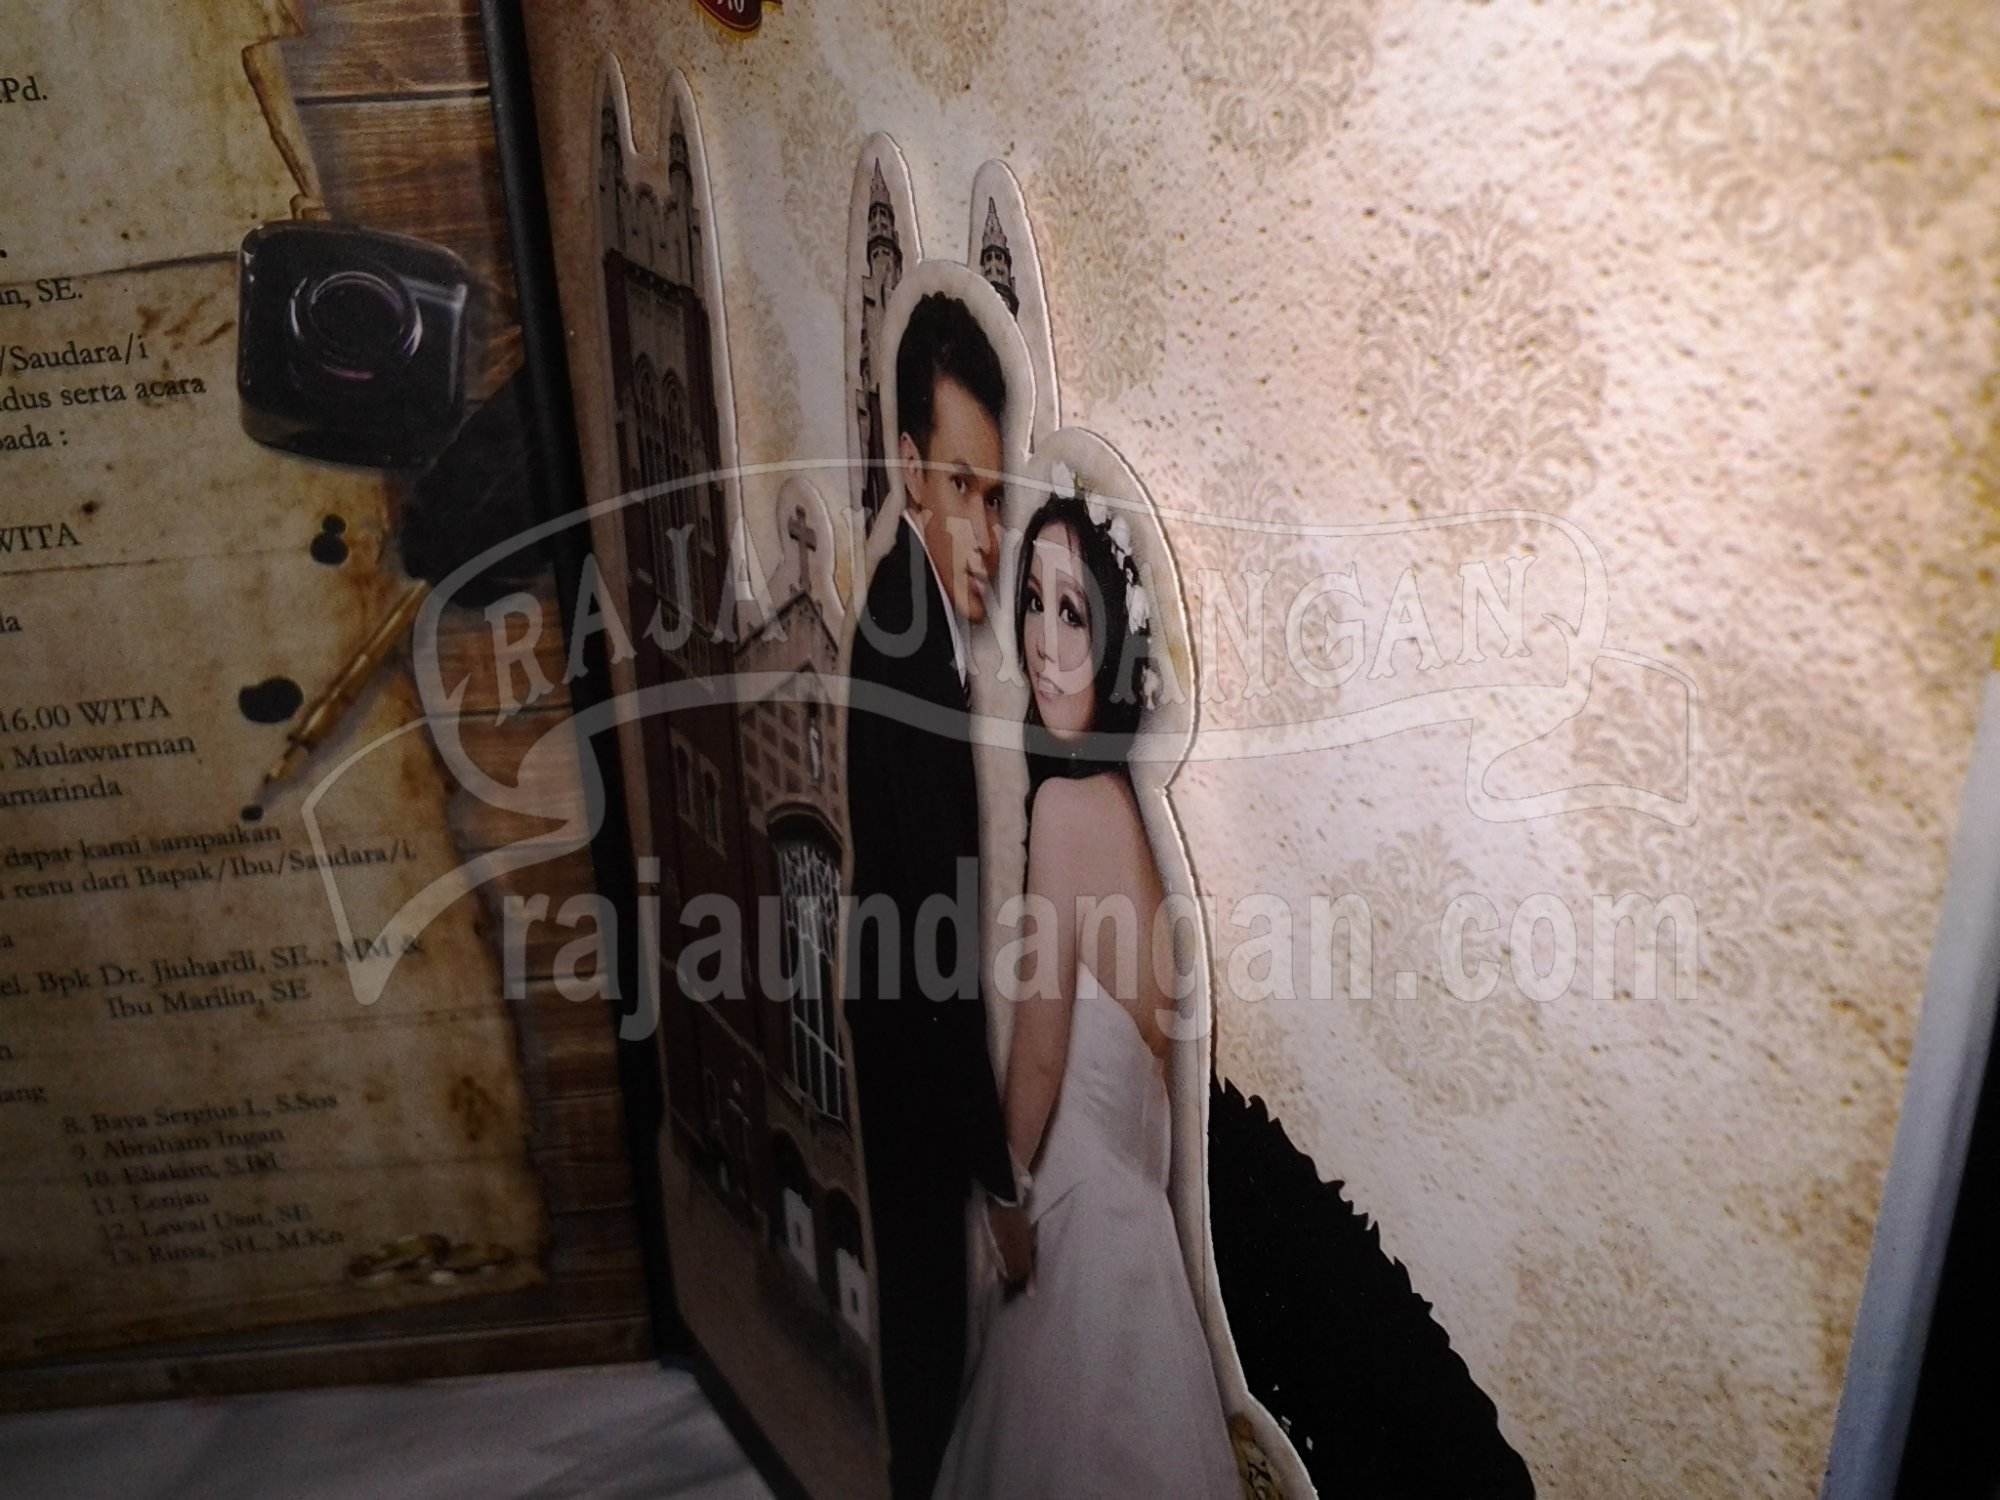 Undangan Pernikahan Hardcover Ivan dan Angun 11 - Cetak Wedding Invitations Eksklusif di Gunung Sari